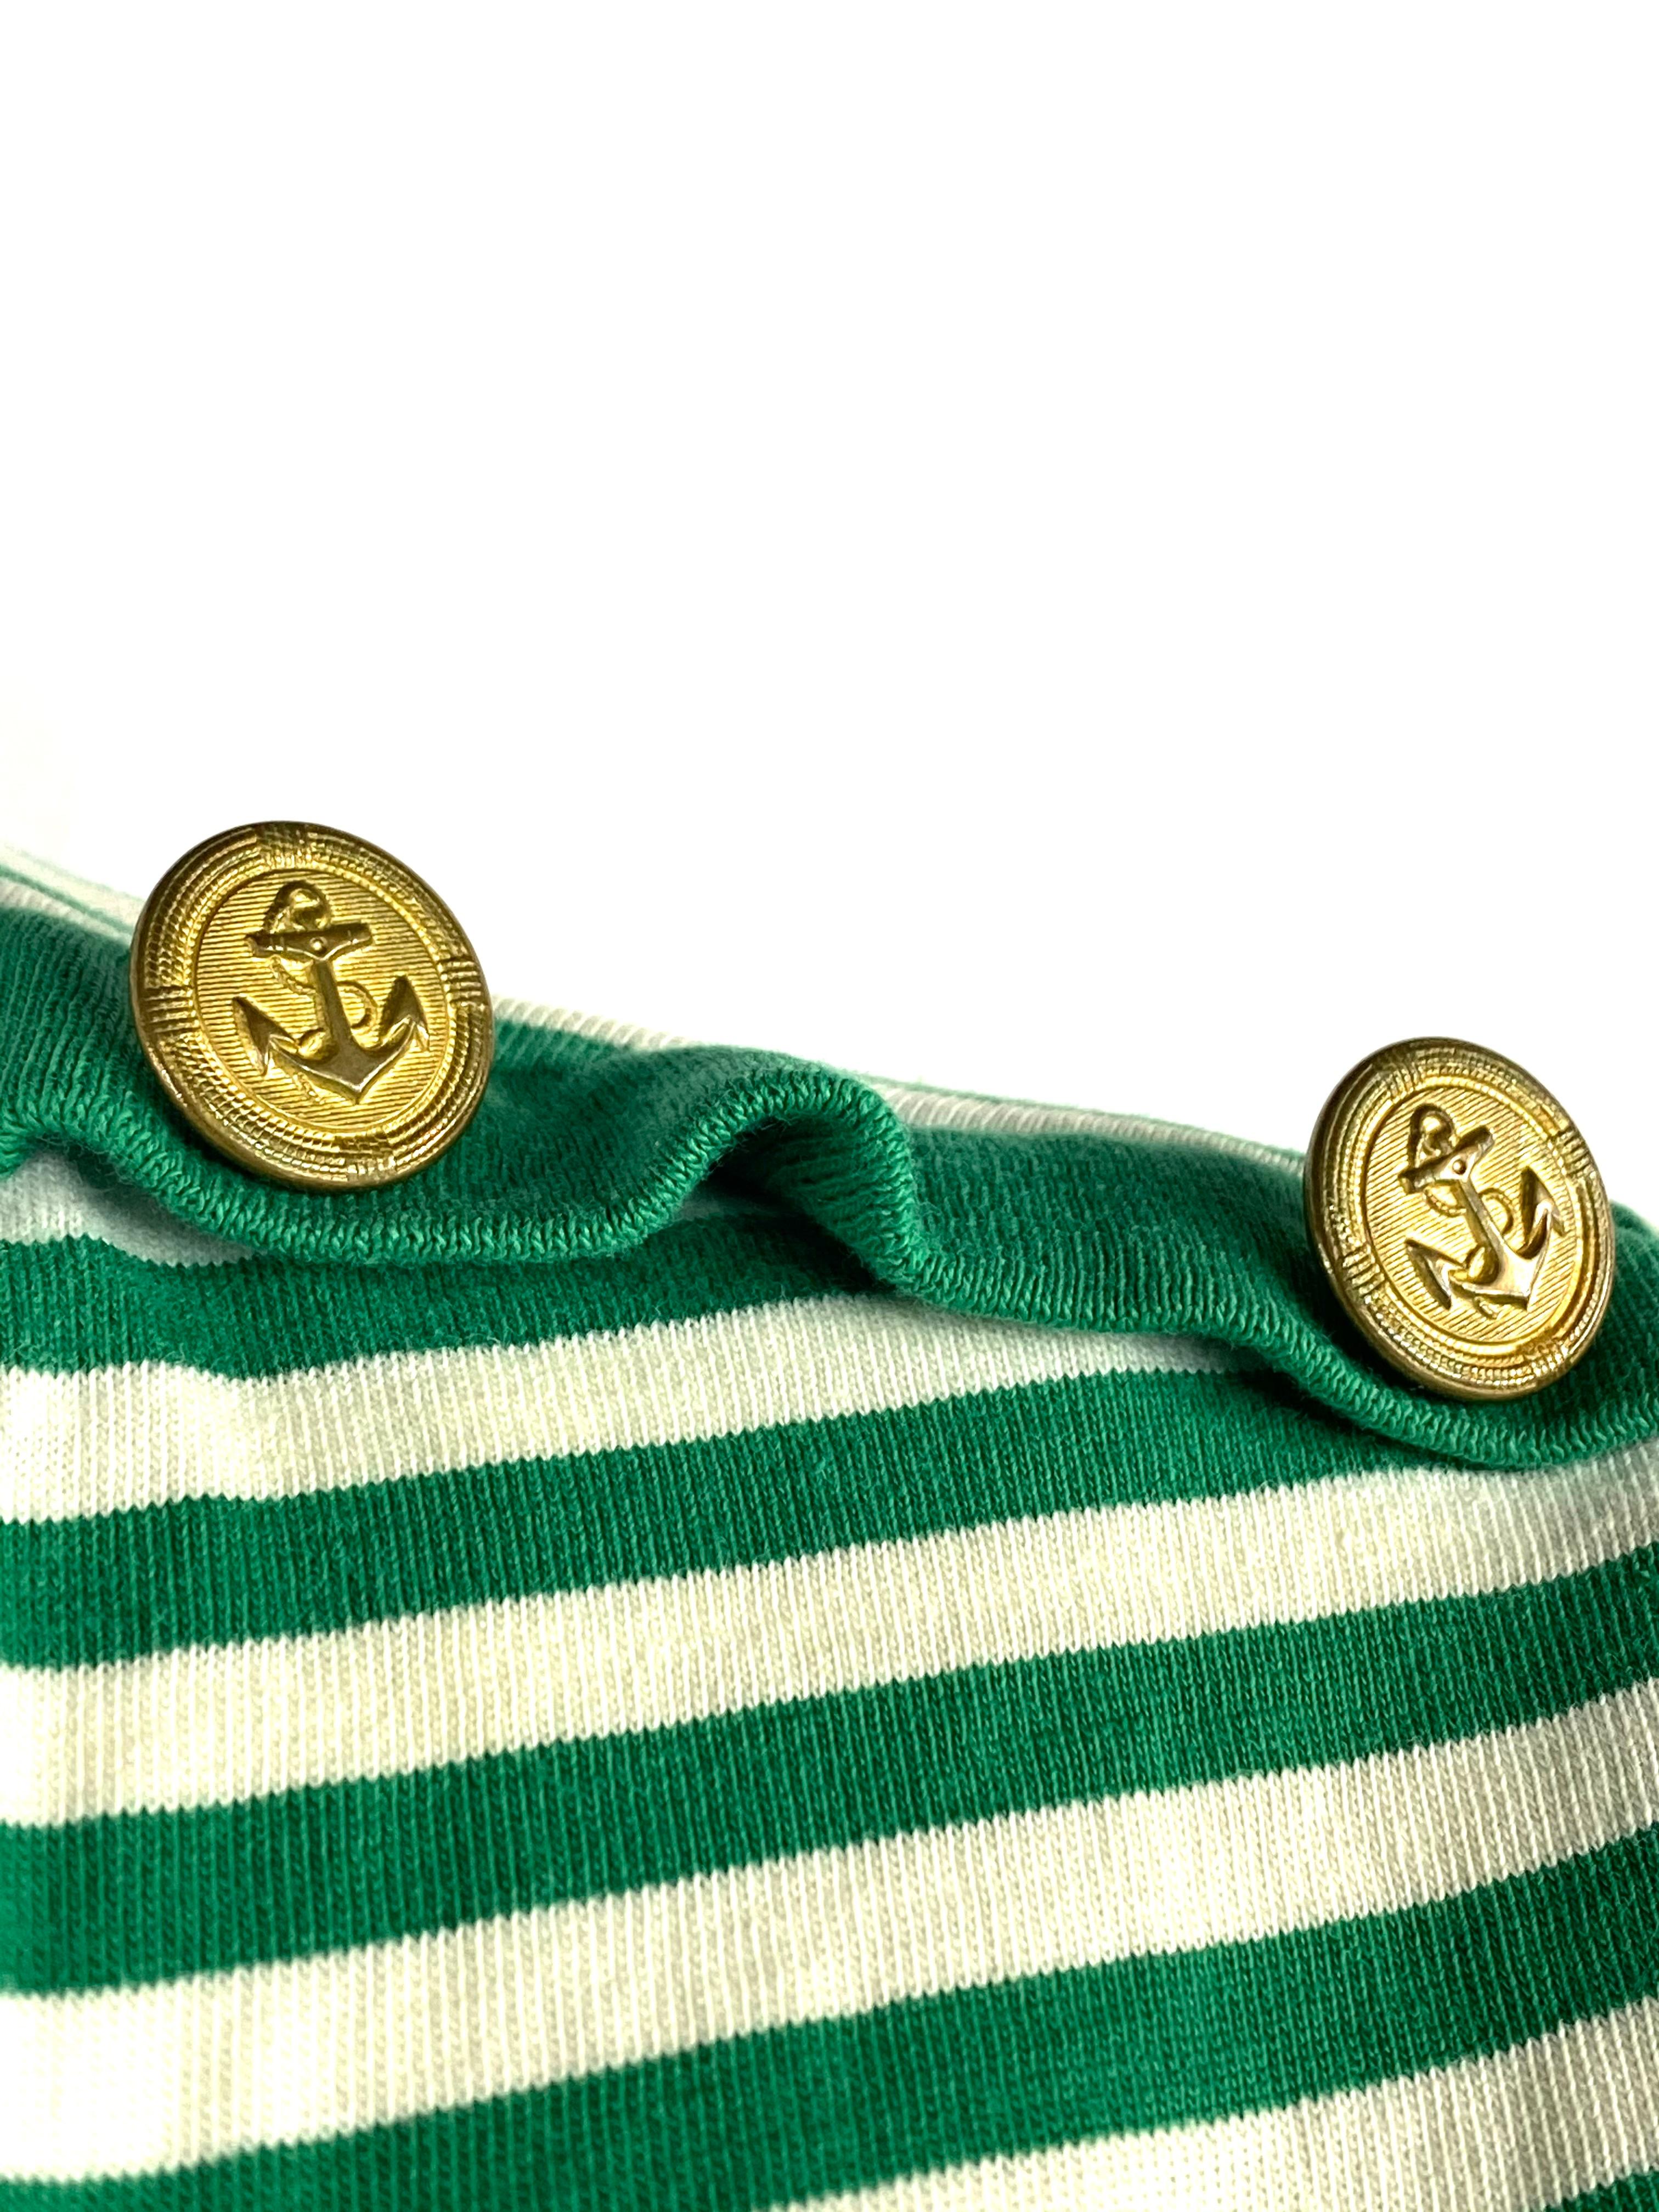 Royal Mer Bretange Weiß und Grün gestreiftes T-Shirt, Größe 46 für Damen oder Herren im Angebot